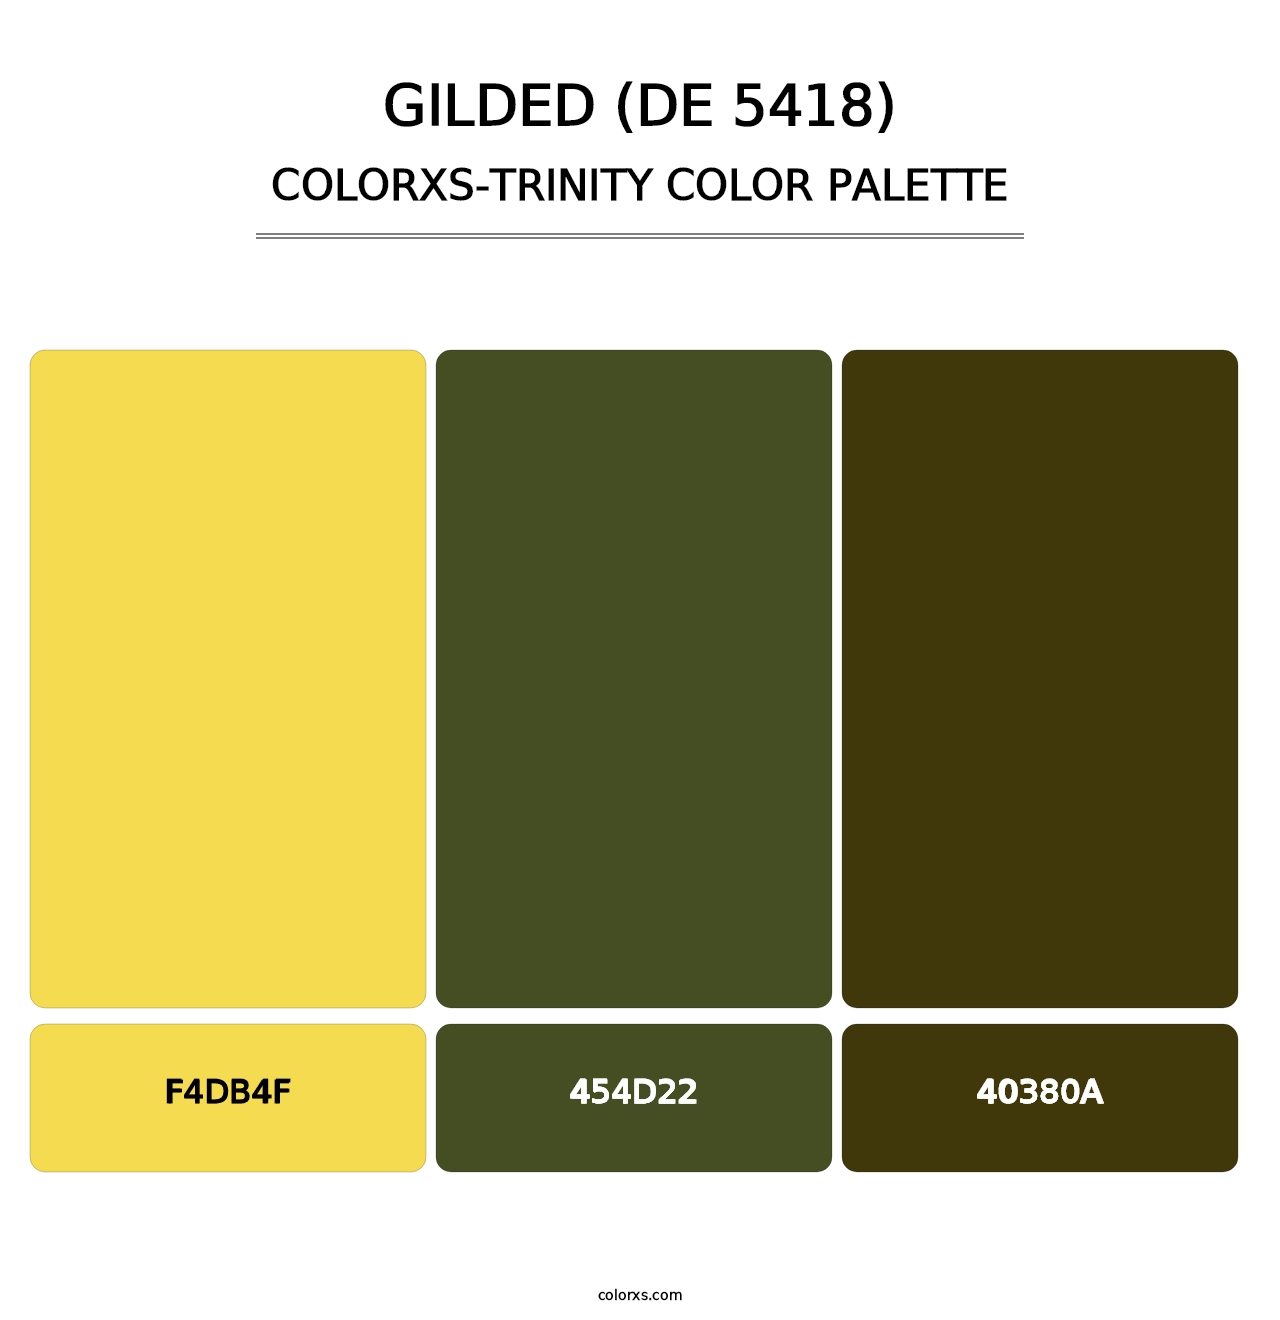 Gilded (DE 5418) - Colorxs Trinity Palette